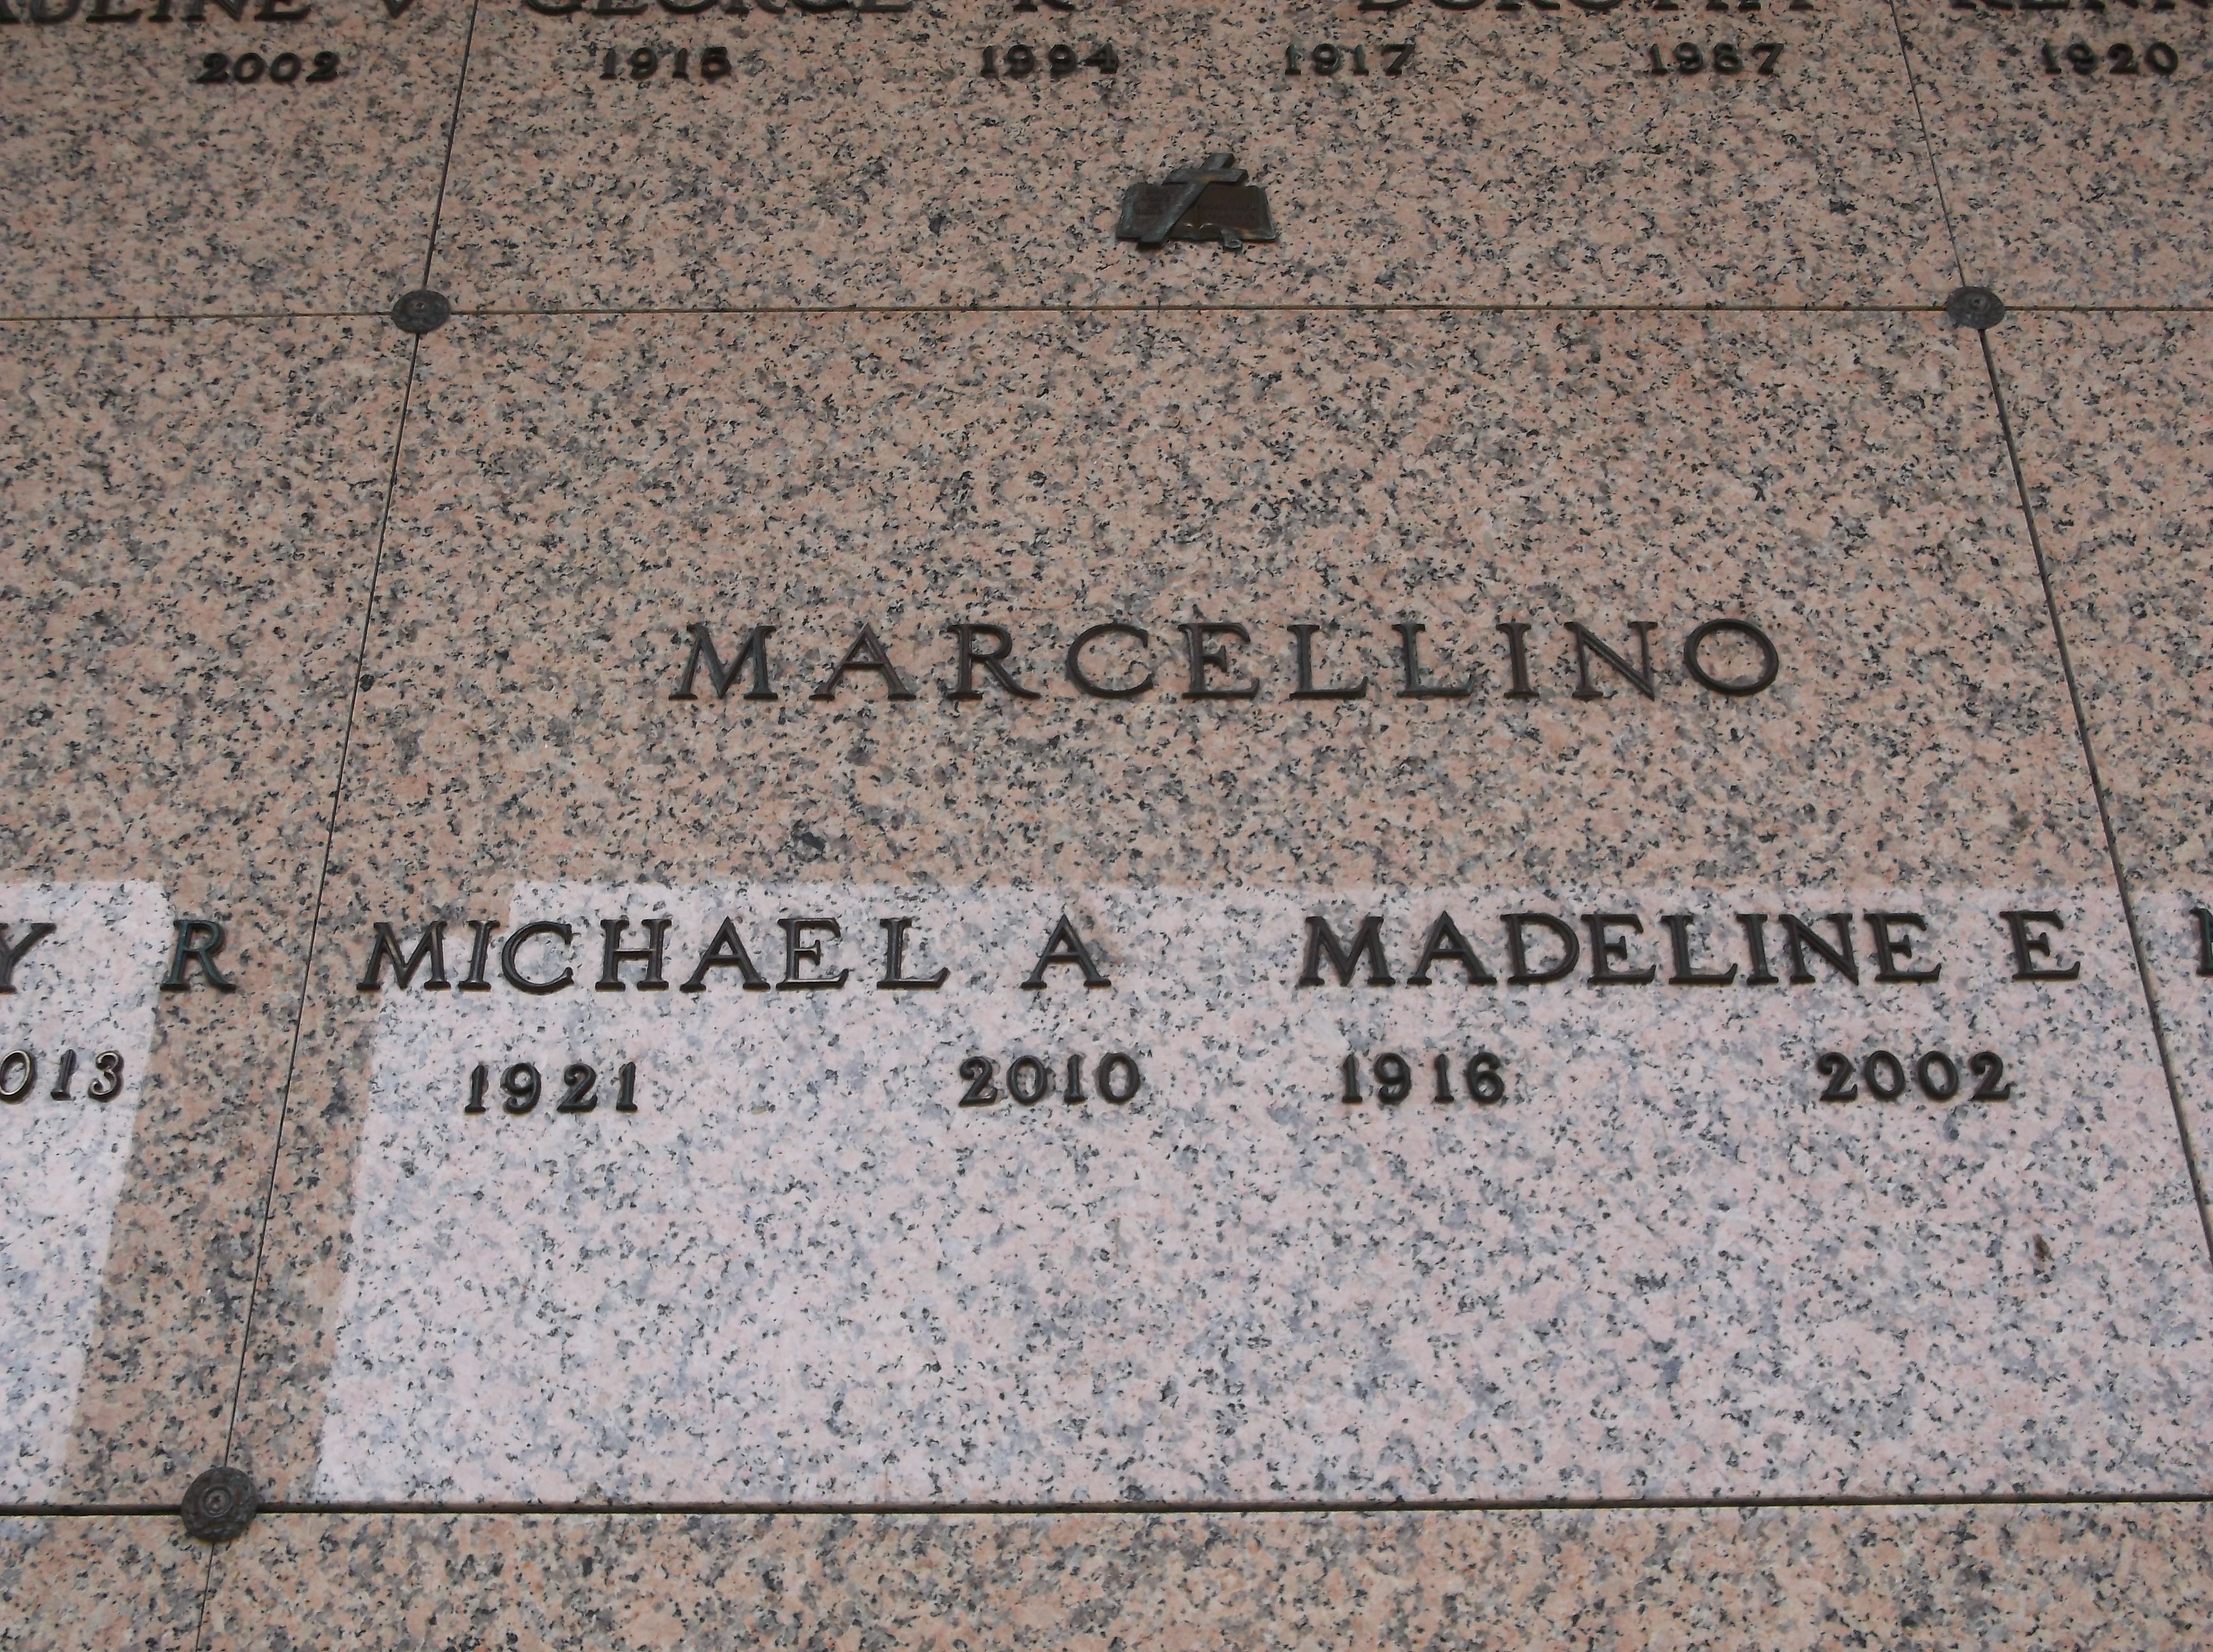 Madeline E Marcellino